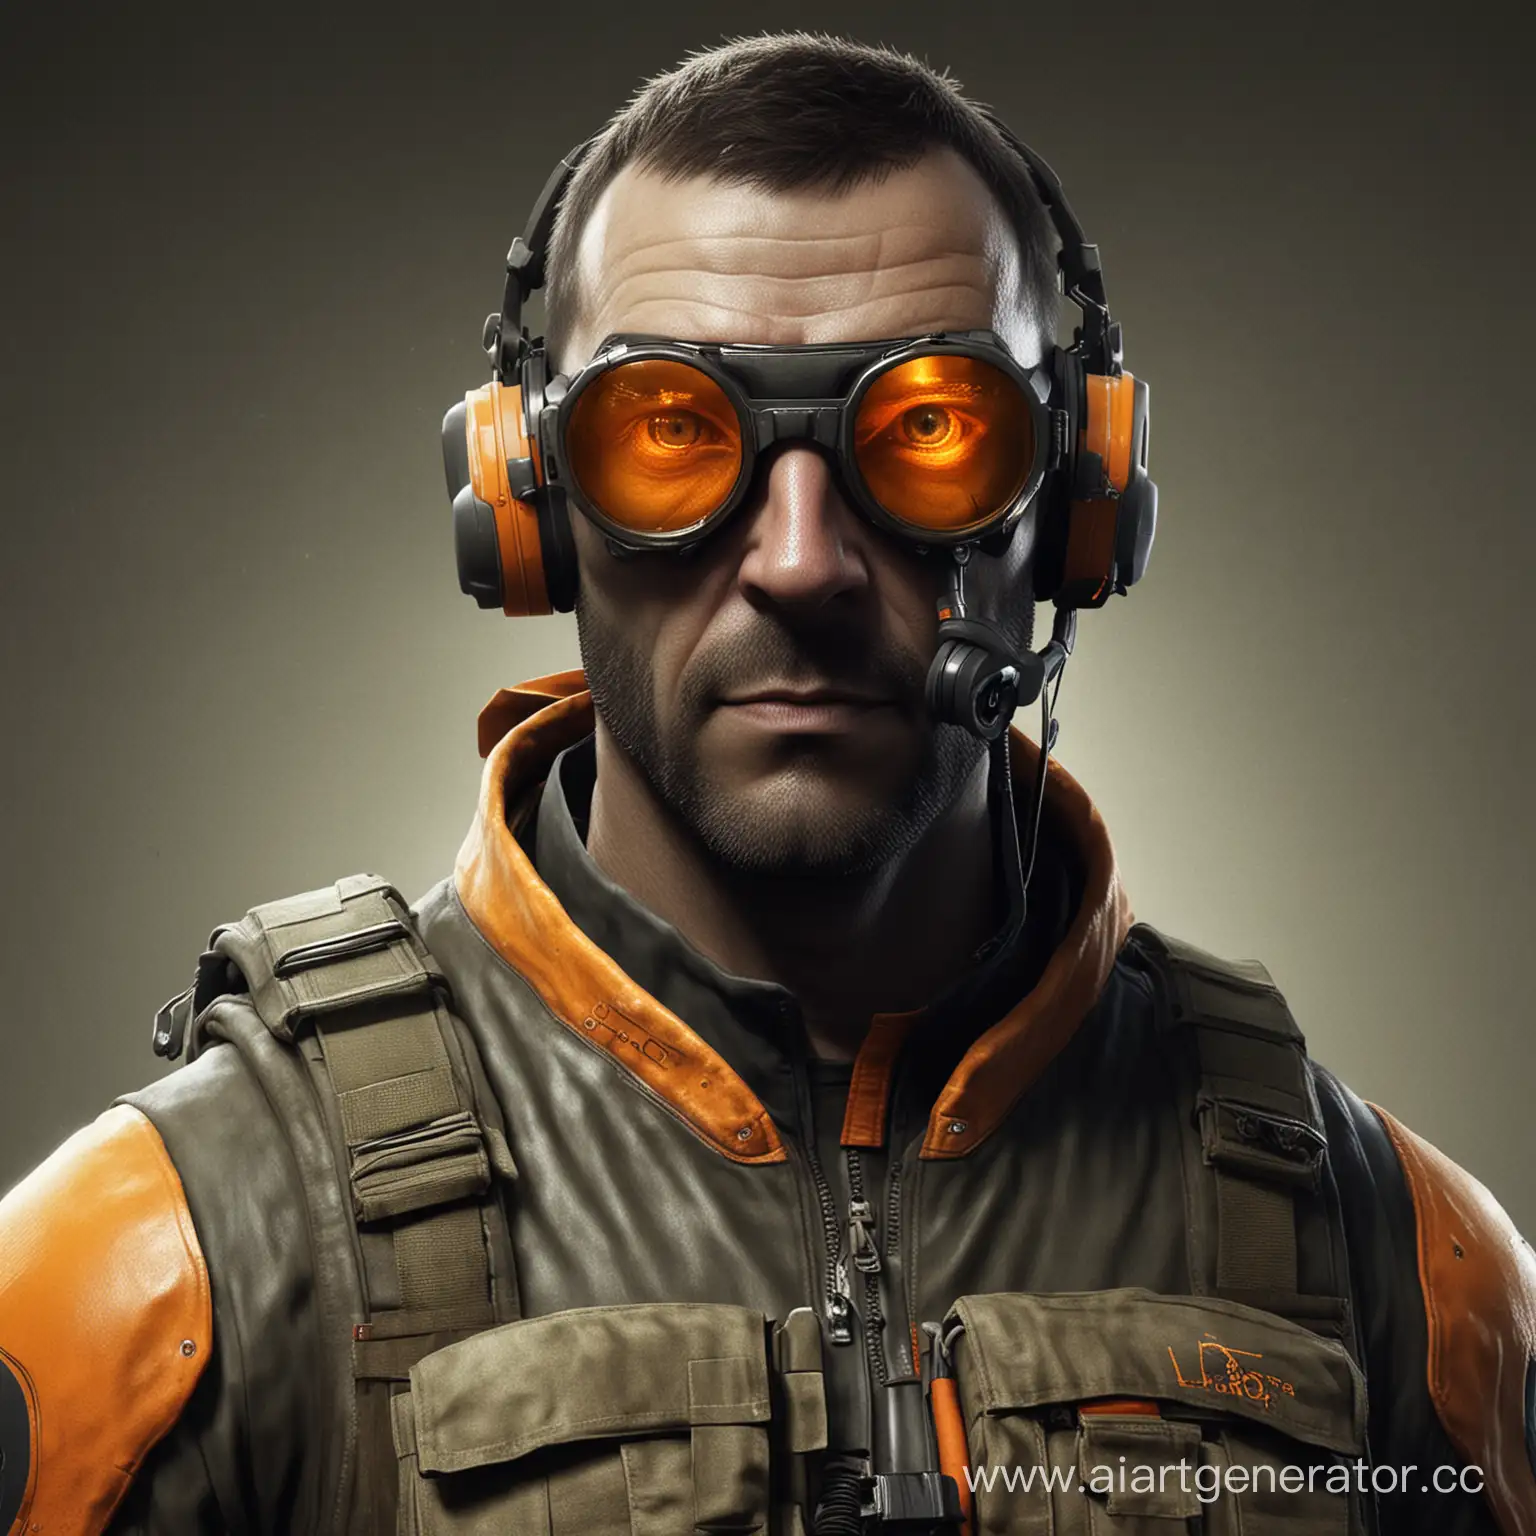 Half-Life-2-Combine-Soldier-with-Orange-Oculars-Futuristic-Combatant-Portrait